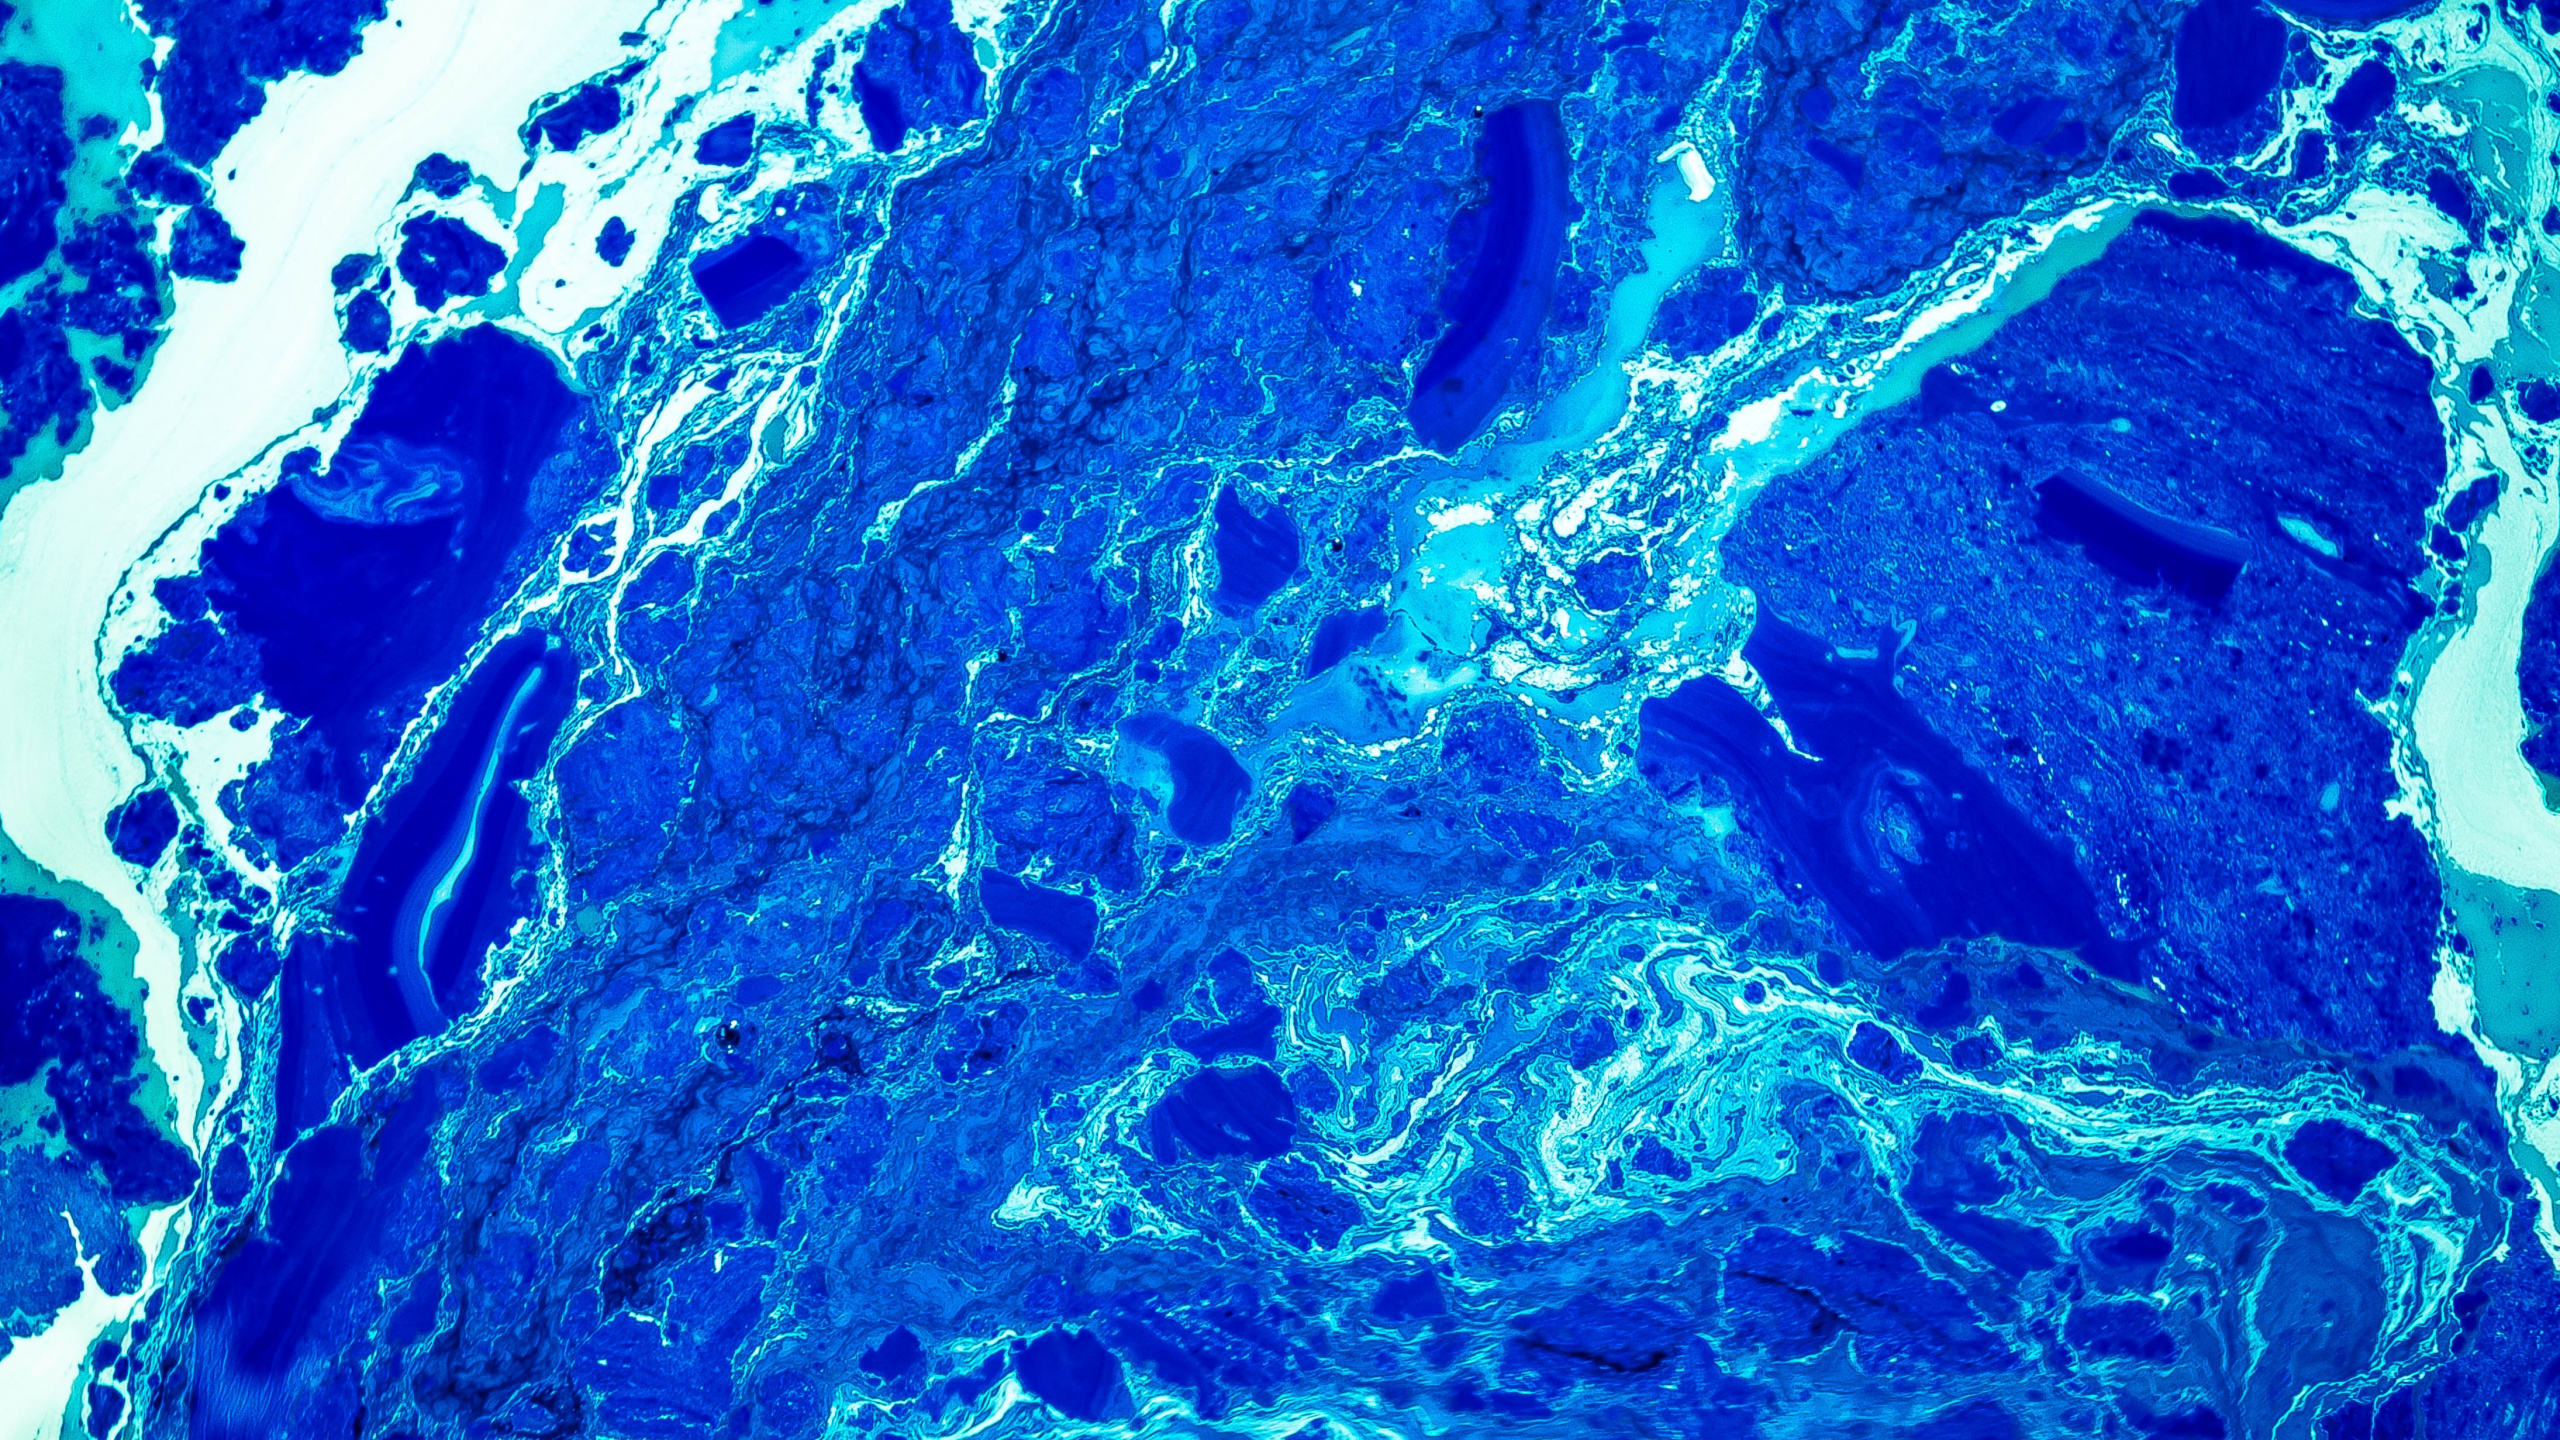 Pintura Abstracta Azul y Marrón. Wallpaper in 2560x1440 Resolution